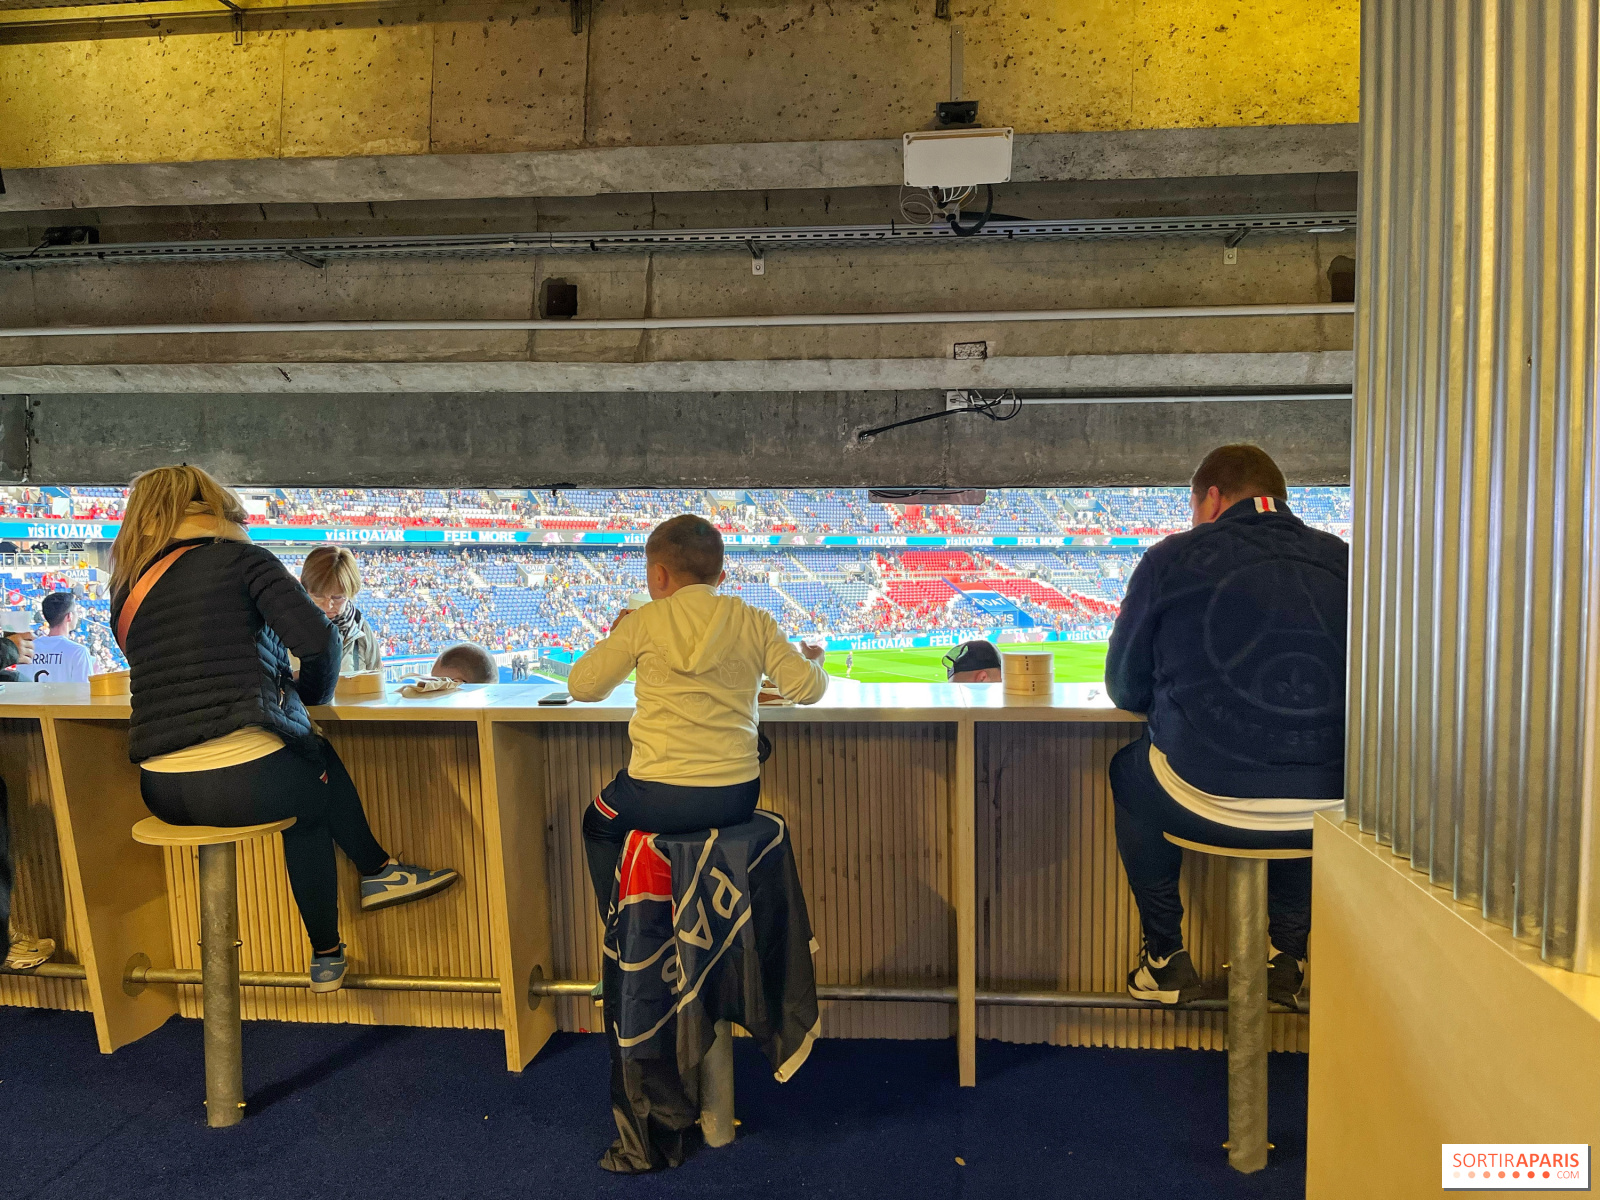 How does a Paris-Saint-Germain match at the Parc des Princes go? The different experiences